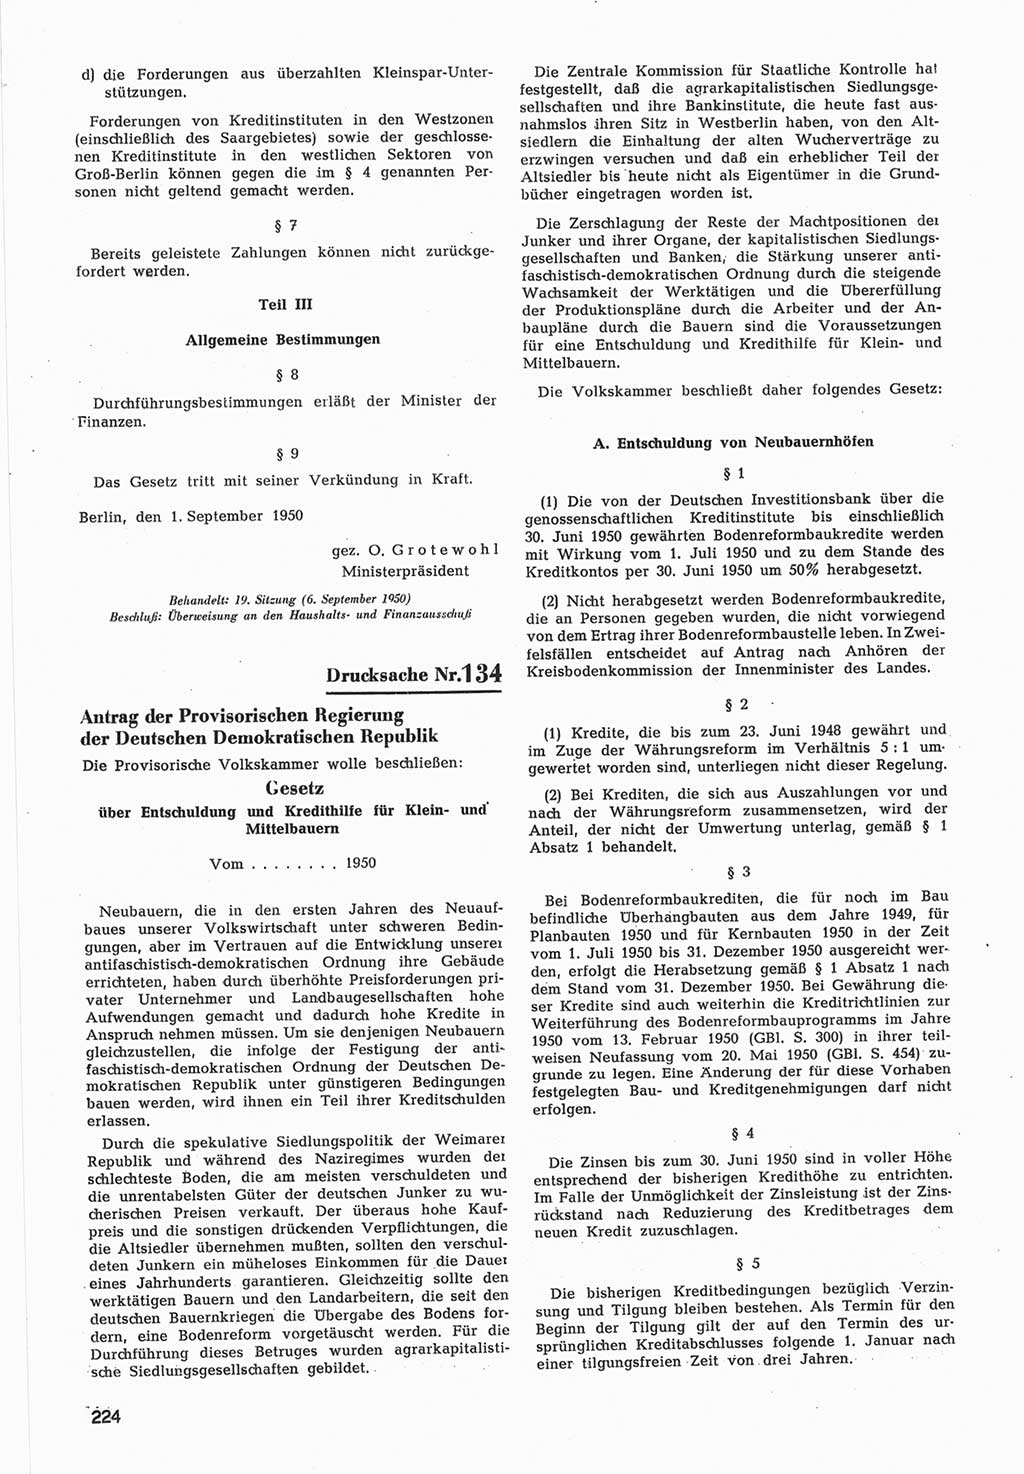 Provisorische Volkskammer (VK) der Deutschen Demokratischen Republik (DDR) 1949-1950, Dokument 826 (Prov. VK DDR 1949-1950, Dok. 826)